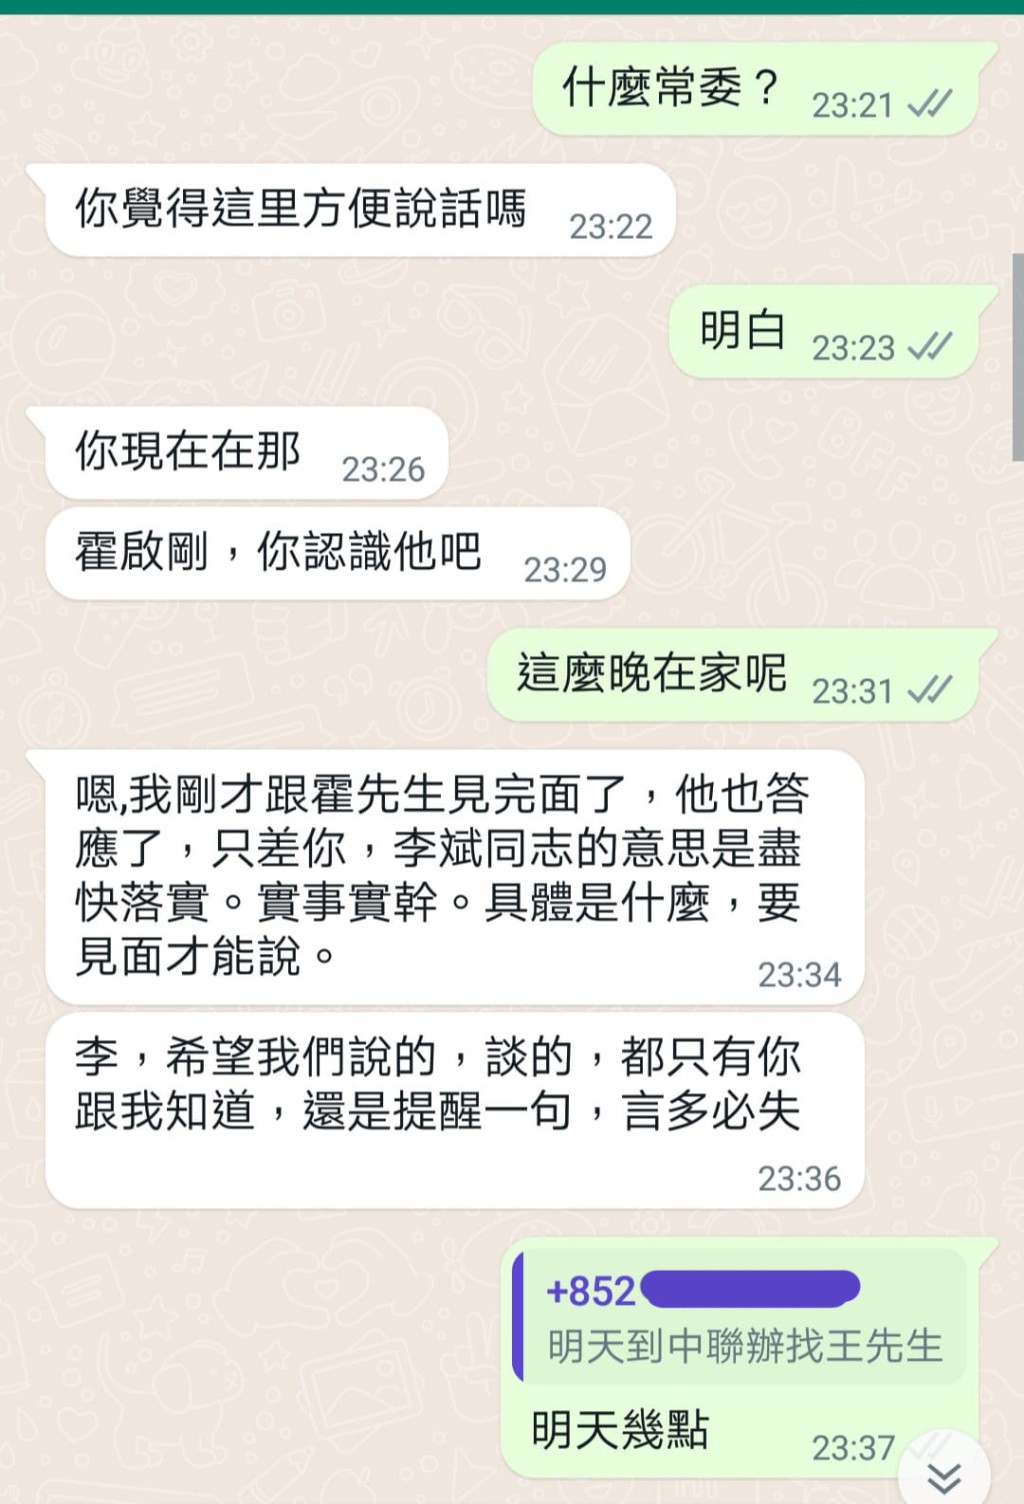 劉國勳於社交媒體展示與騙徒的對話。